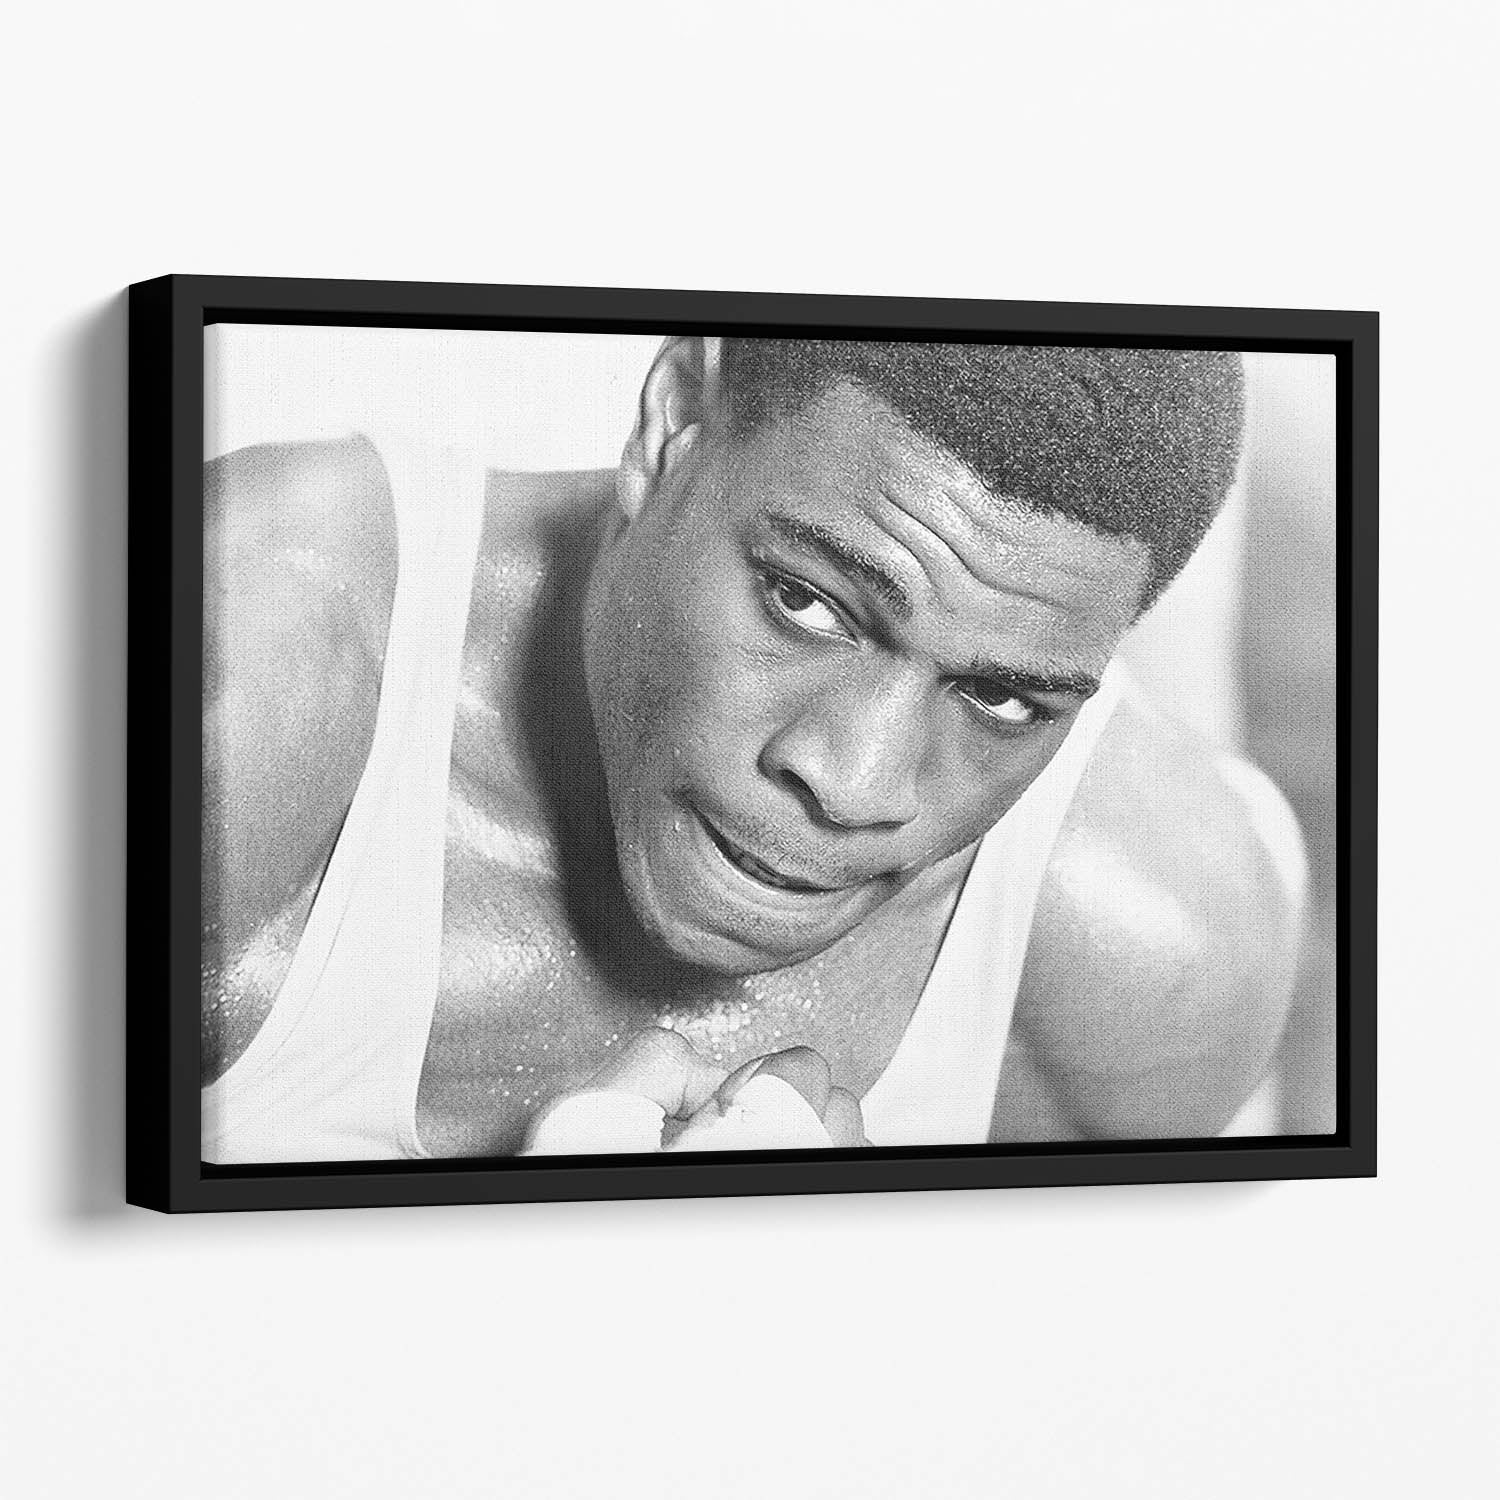 Boxer Frank Bruno Floating Framed Canvas